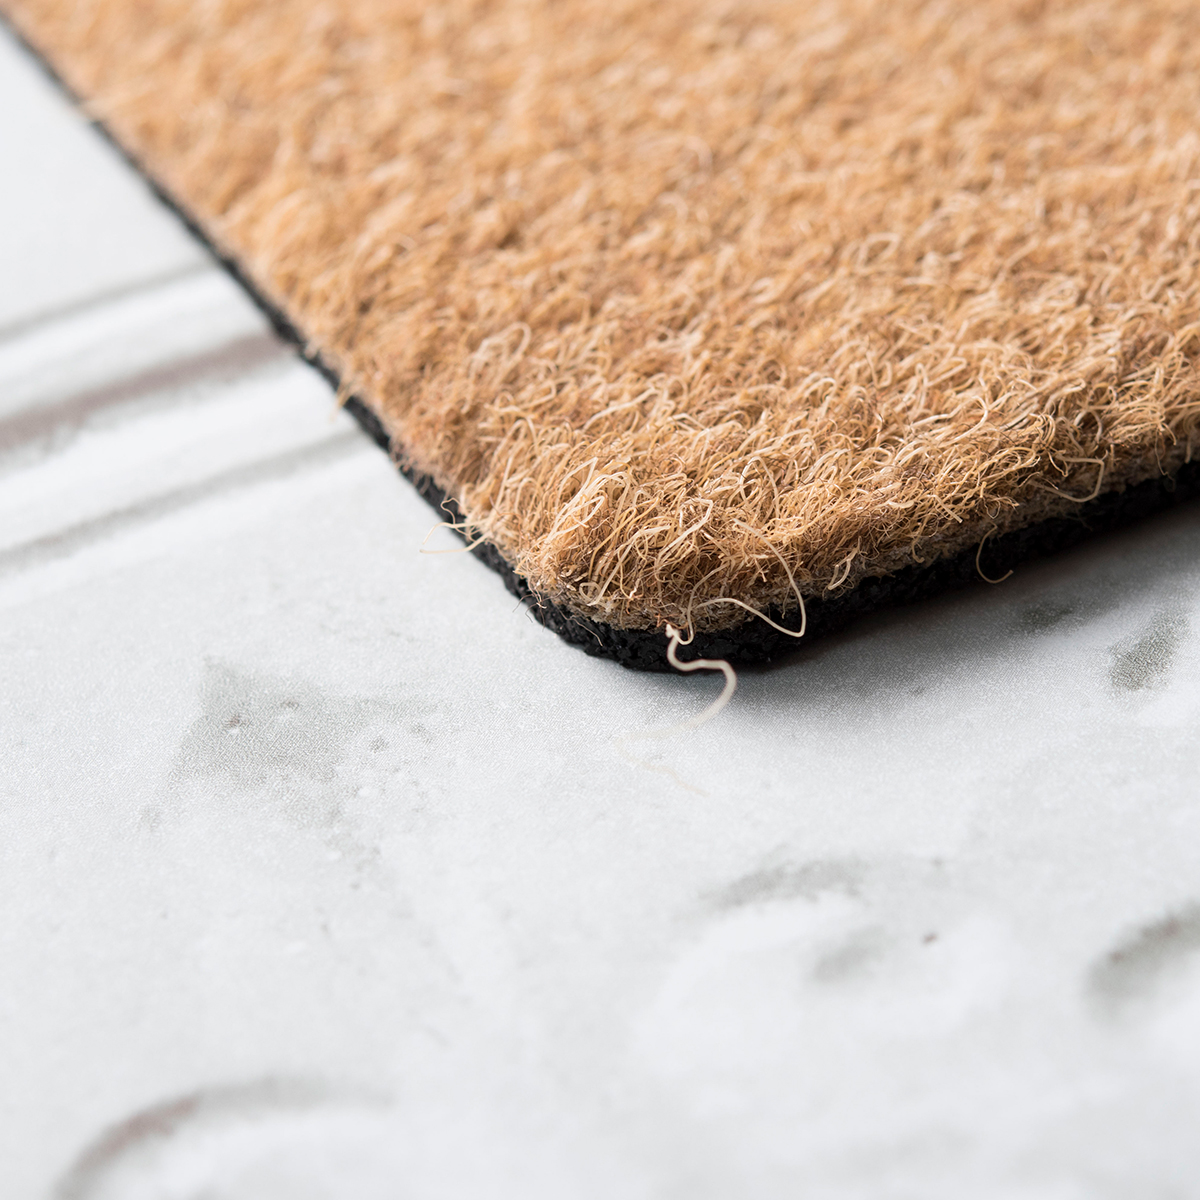 Personalised Doormat - Turn The Straighteners Off